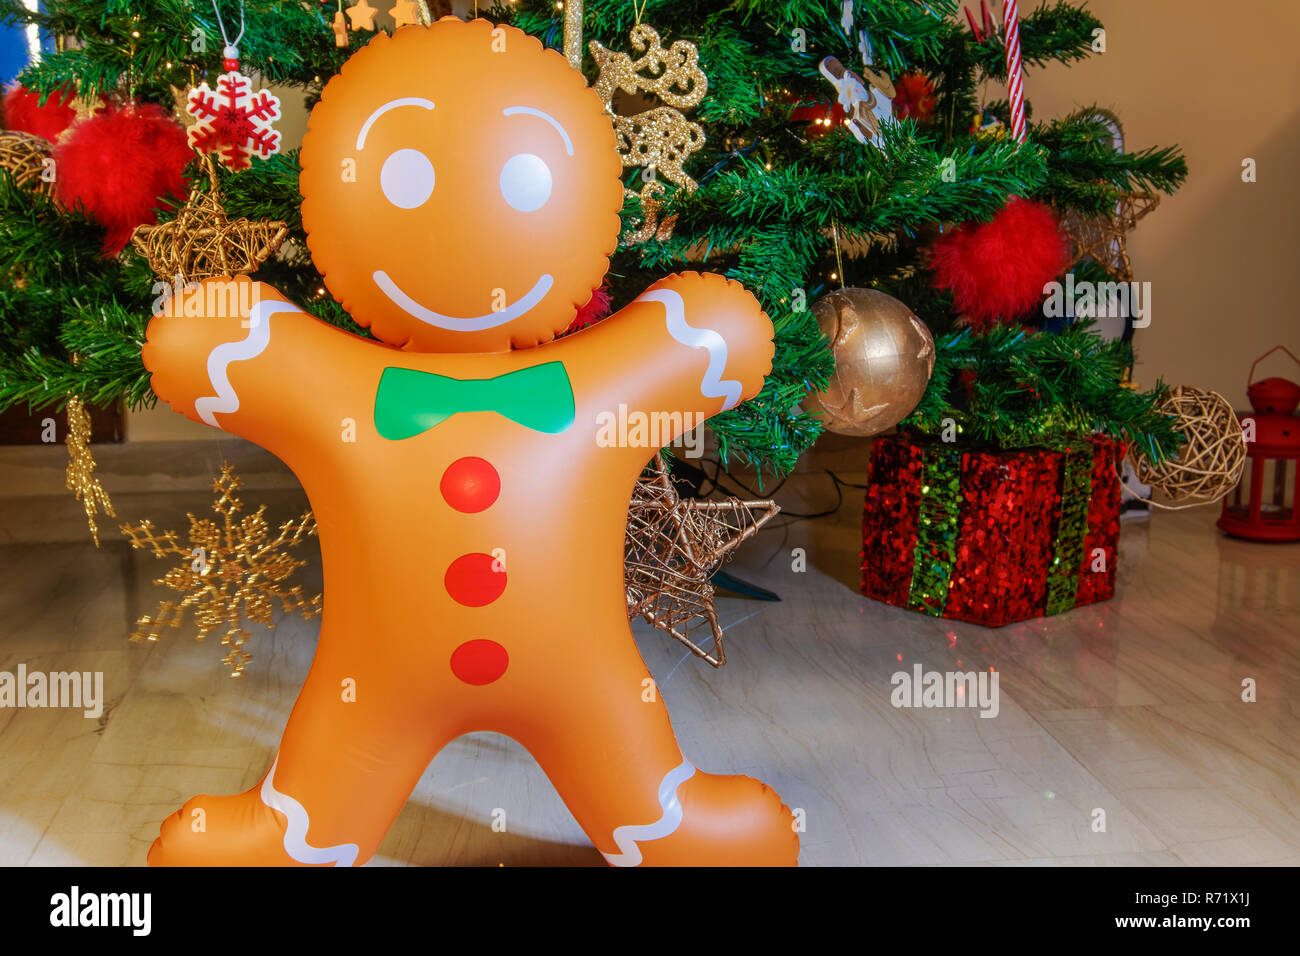 Große aufblasbare Gingerbread Man am Weihnachtsbaum. Luft ausgeblasen saisonale Abbildung vor dem beleuchteten künstlicher Weihnachtsbaum mit Beleuchtung & Dekorationen. Stockfoto